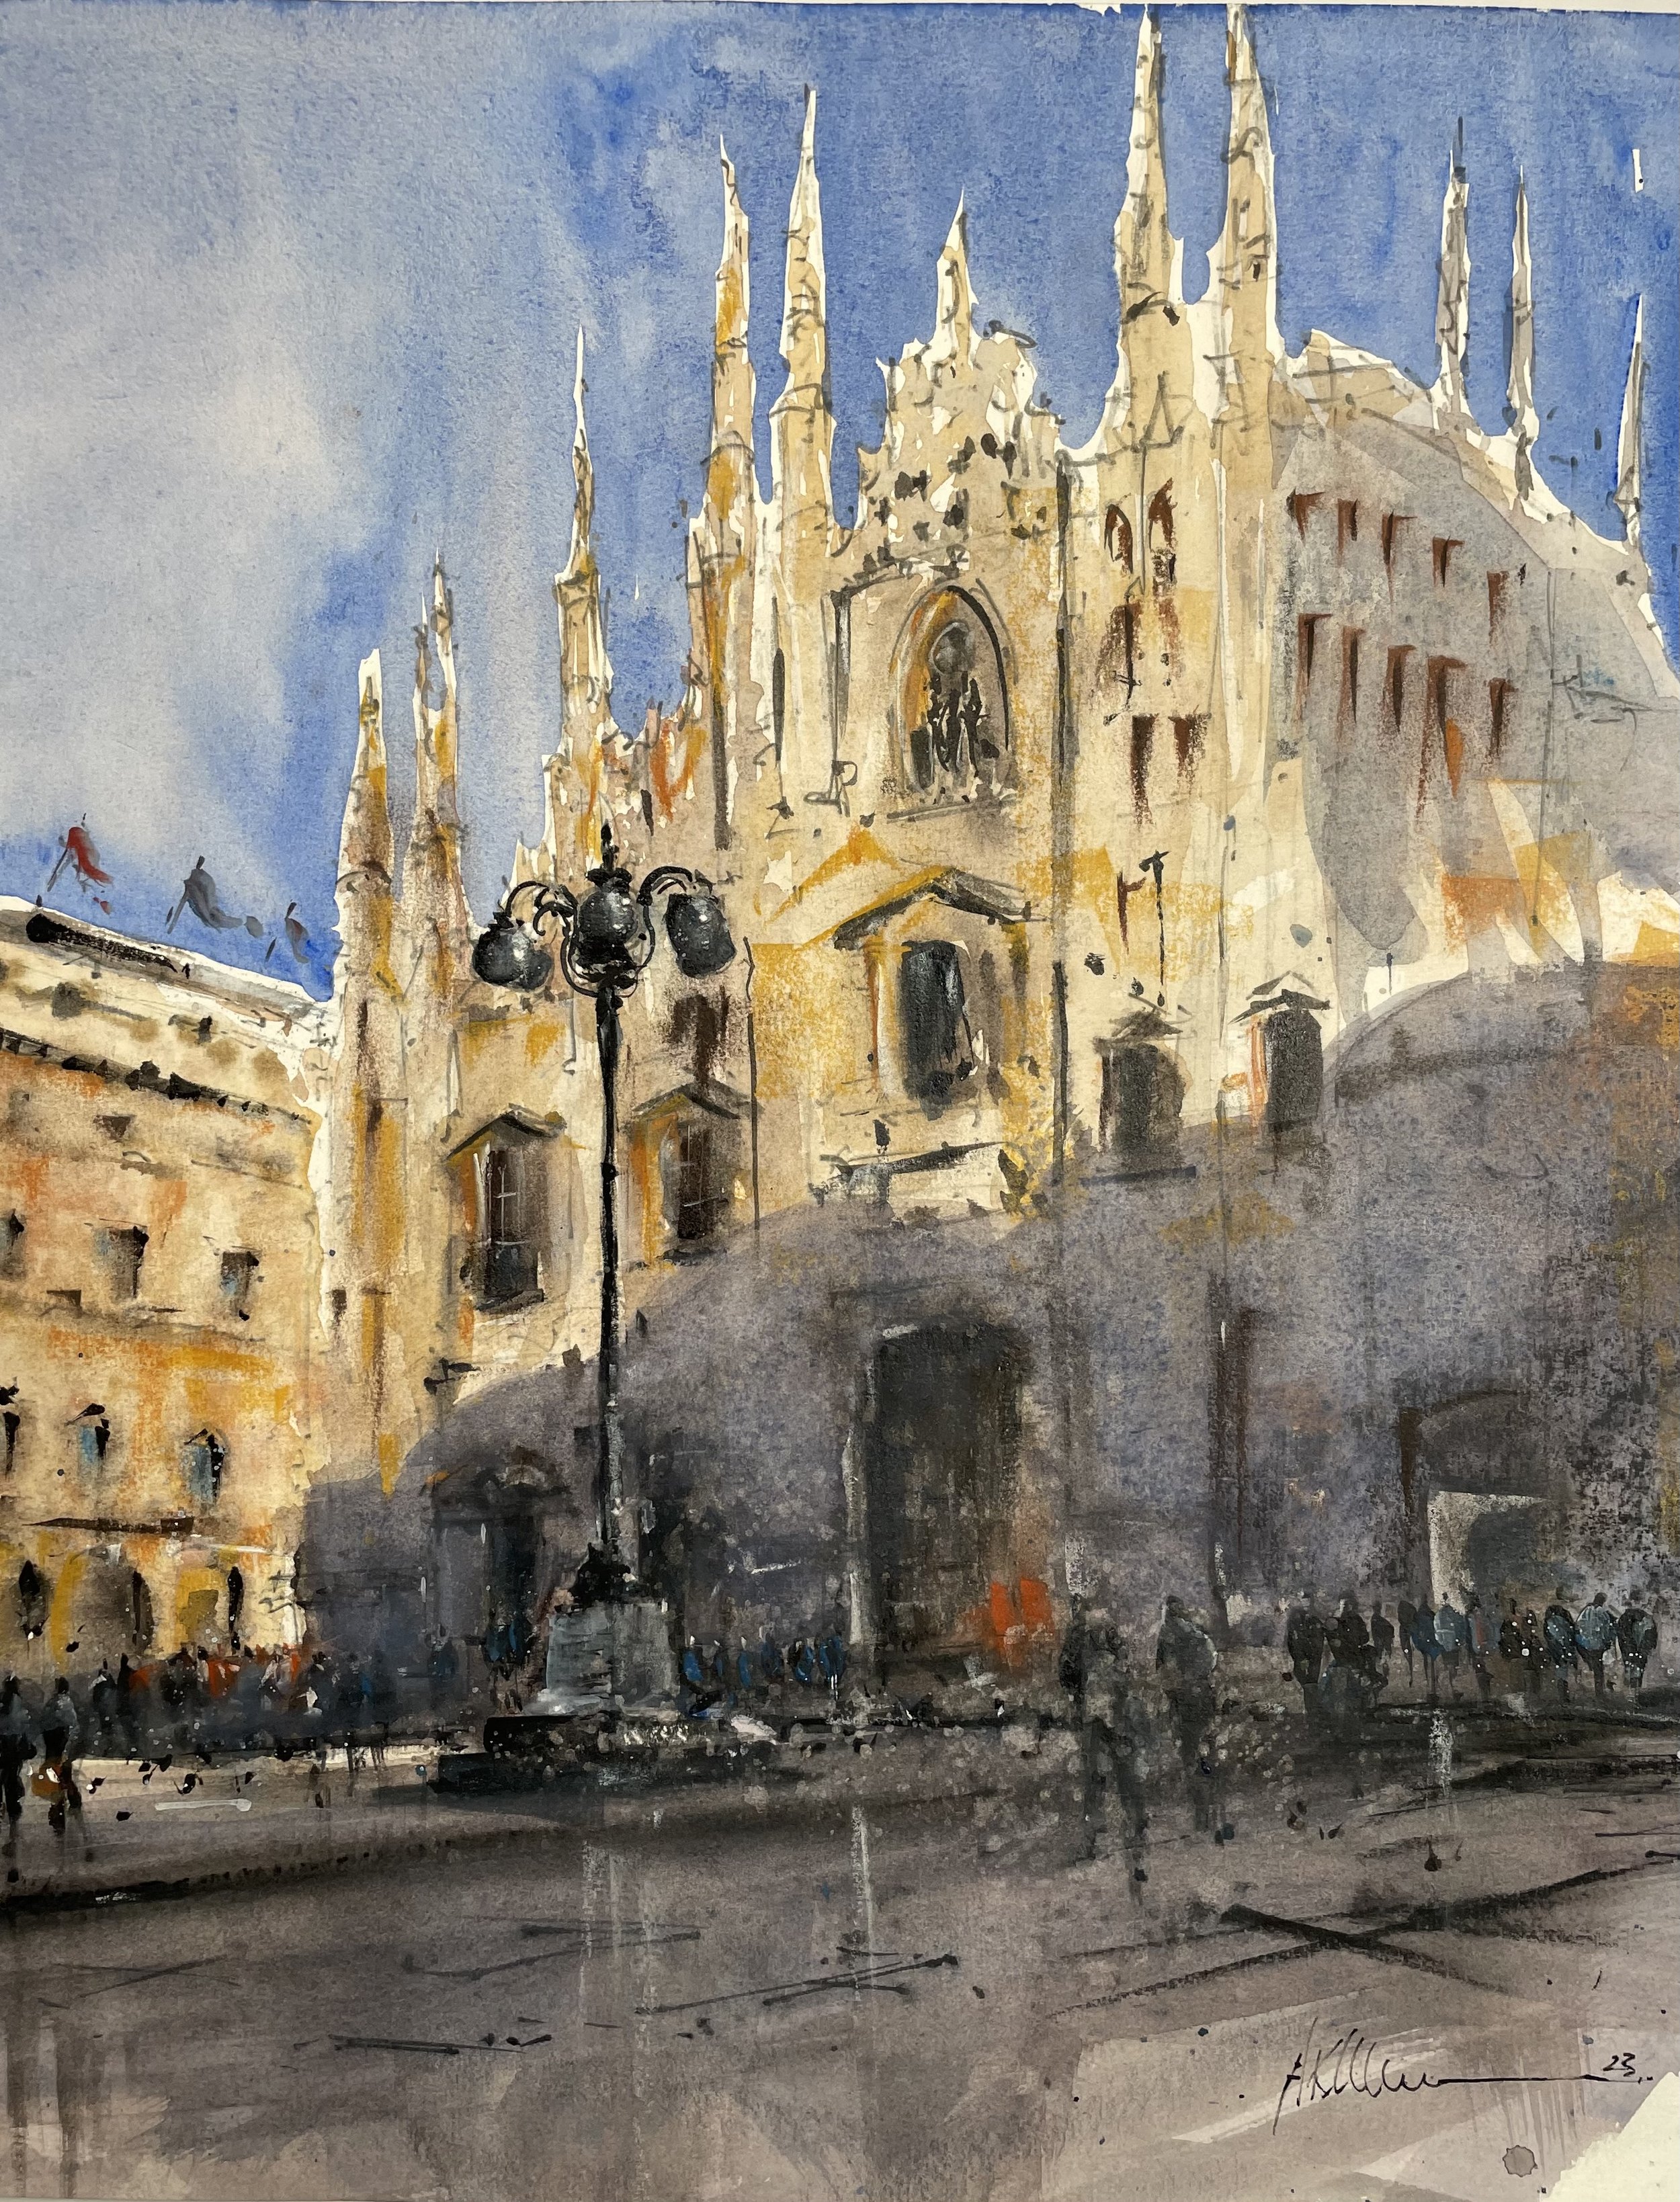 Duomo de Milano (16 x 13) Pastel and Watercolor.jpg